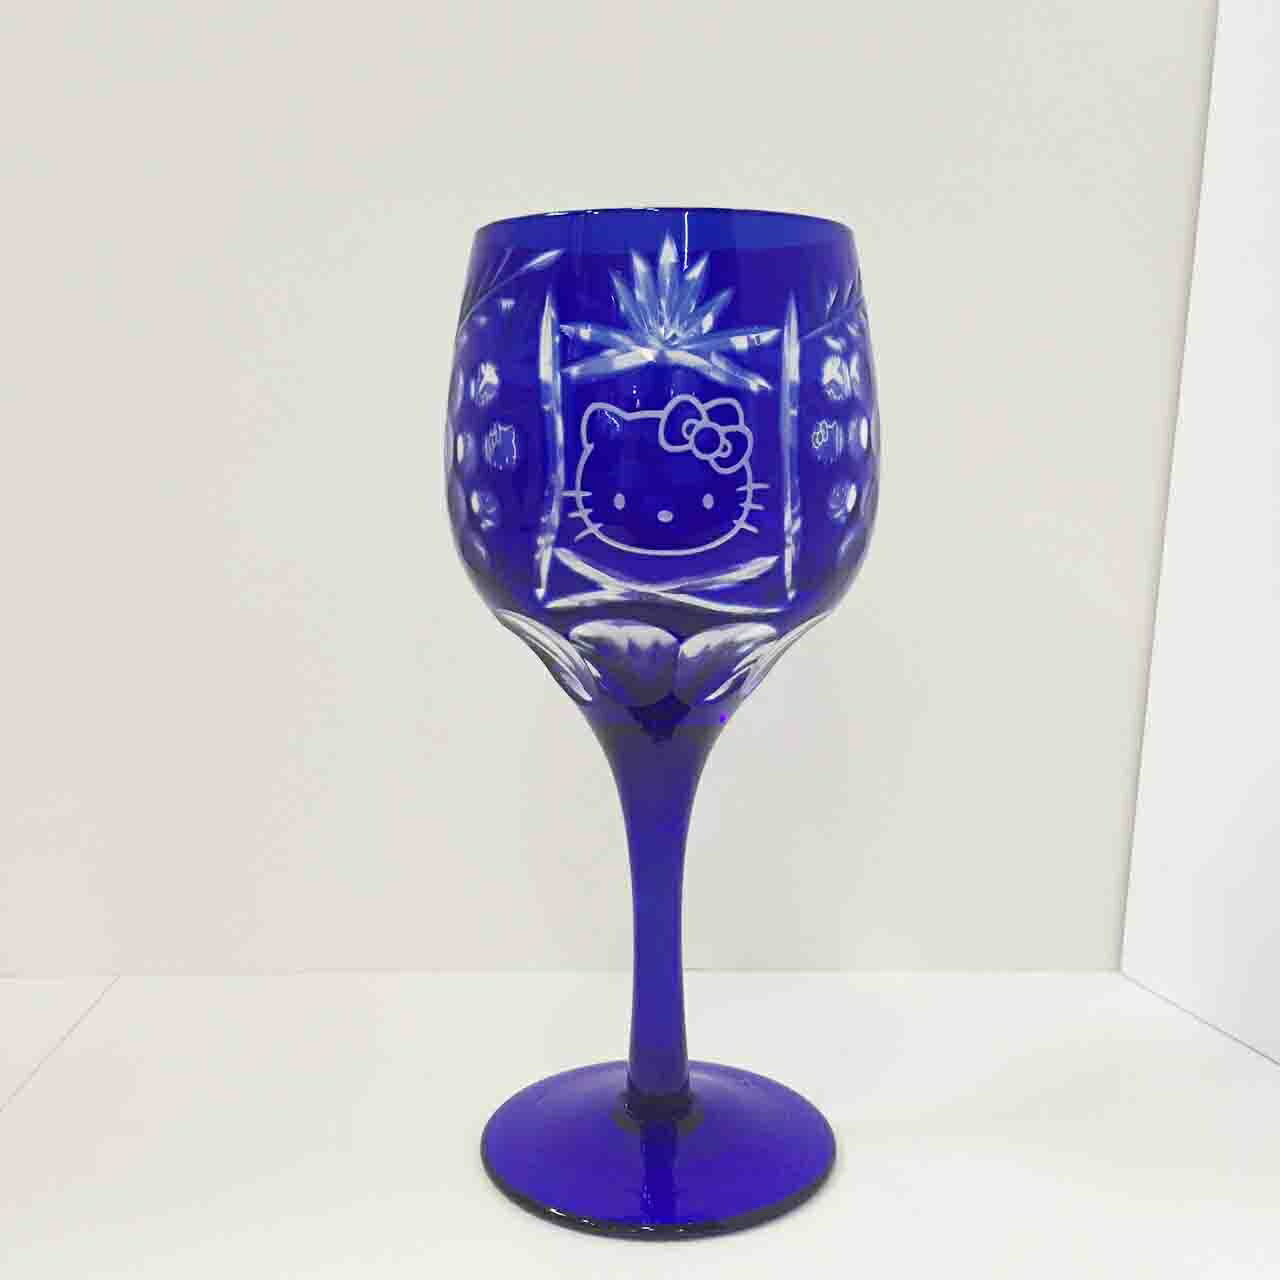 【震撼精品百貨】Hello Kitty 凱蒂貓 玻璃切割高級紅酒杯-藍色 震撼日式精品百貨